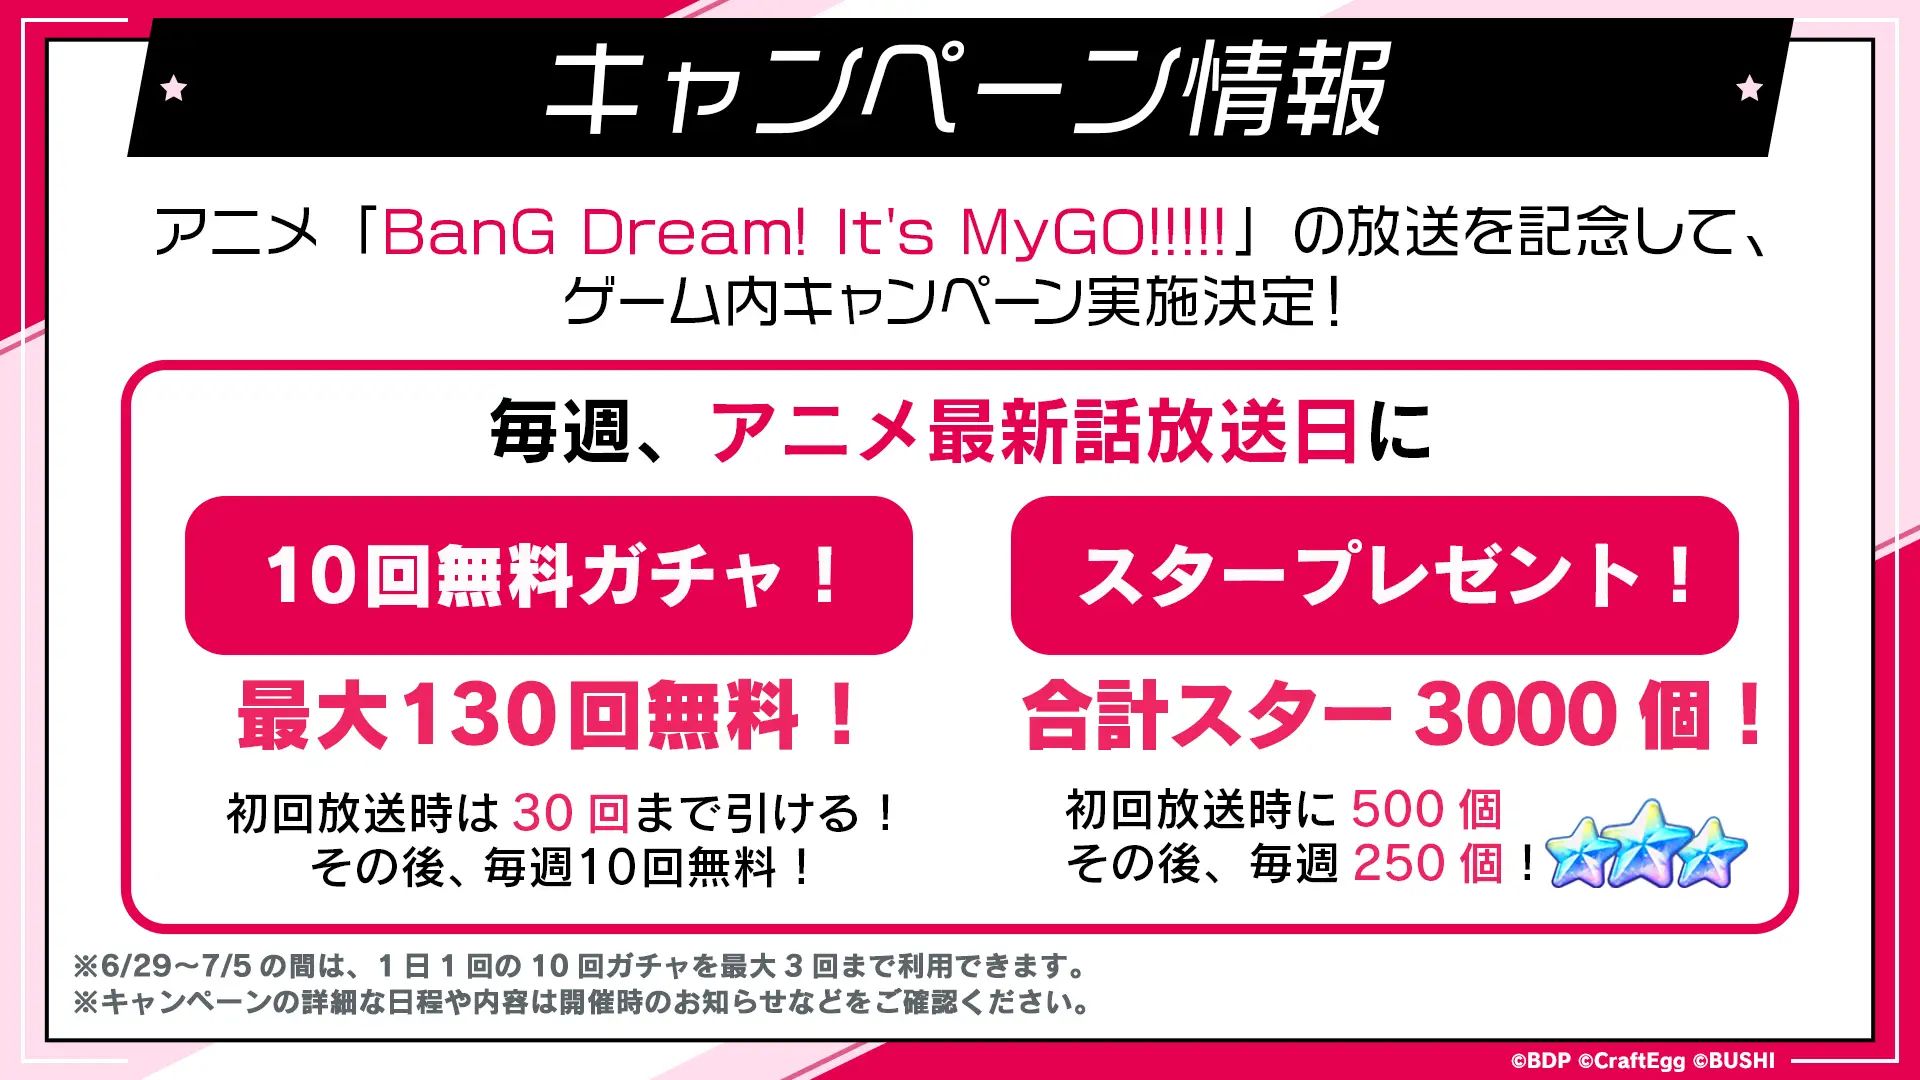 アニメ"BanG Dream! It’s MyGO！！！！！"